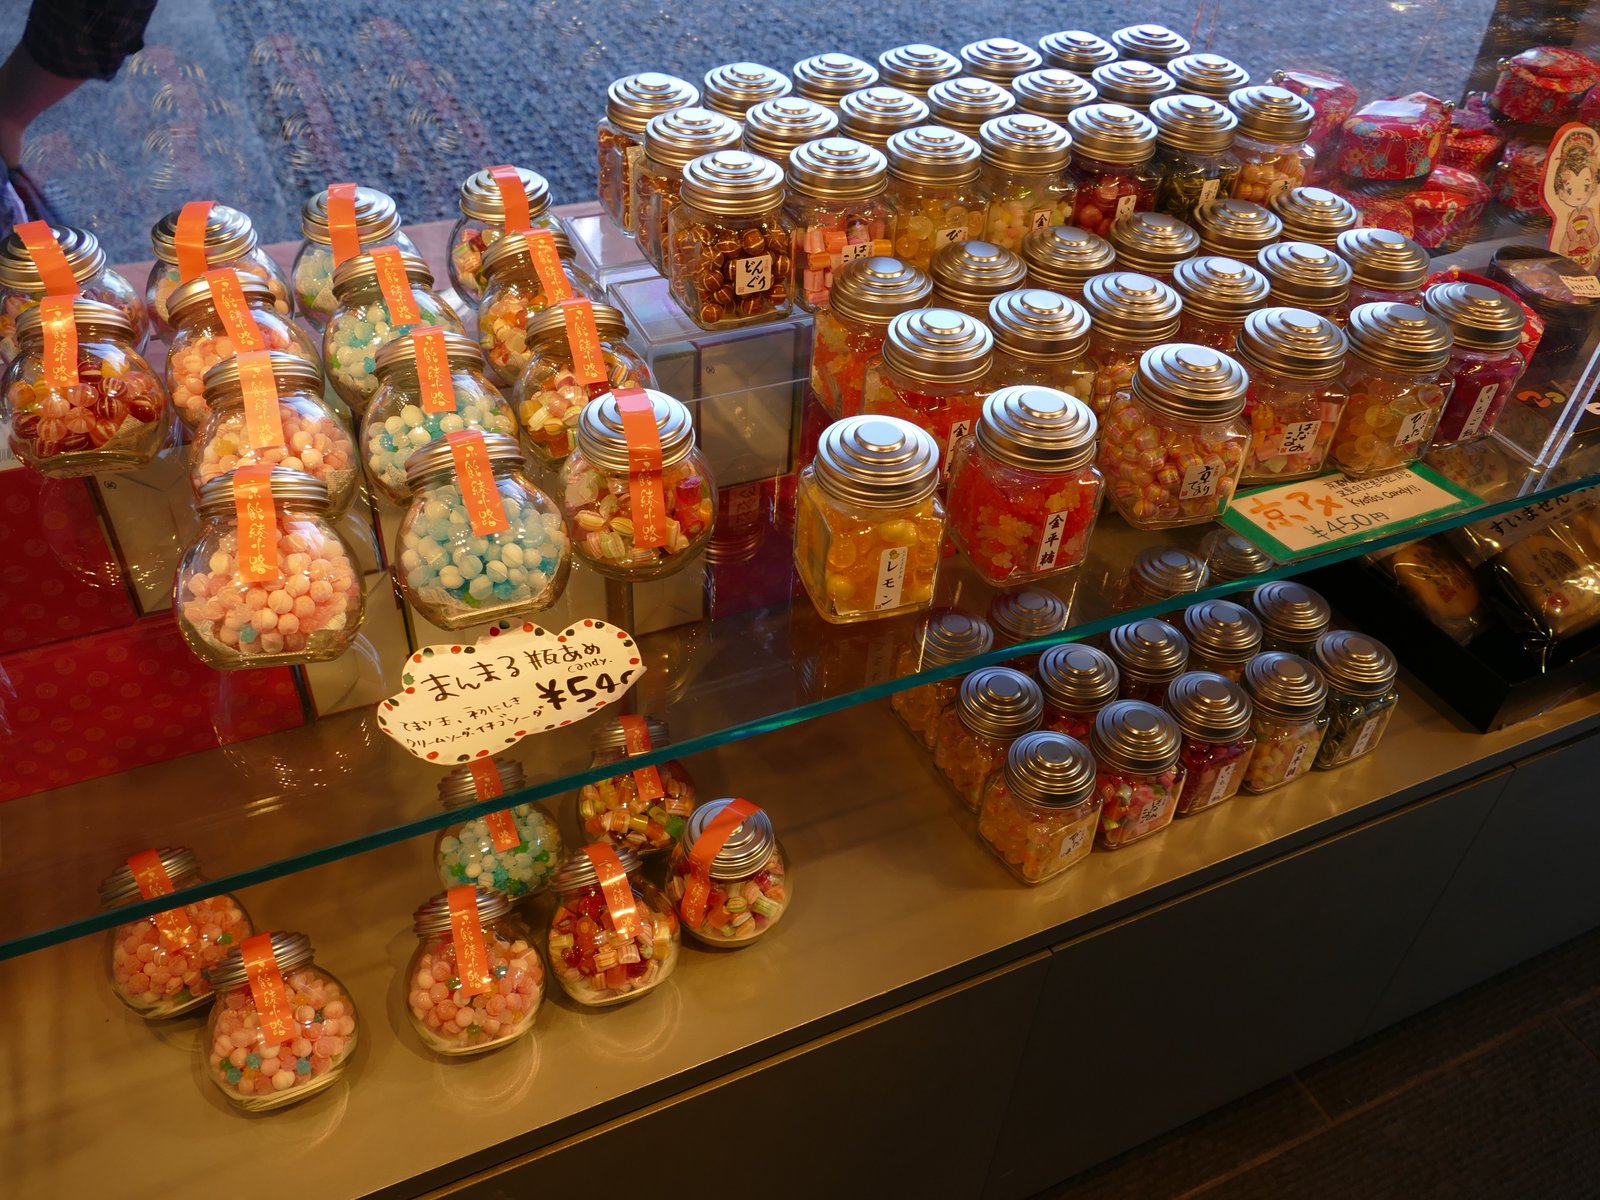 100円以下の京都 嵐山お勧めお土産 可愛いパンダ和菓子も注目 Playlife プレイライフ